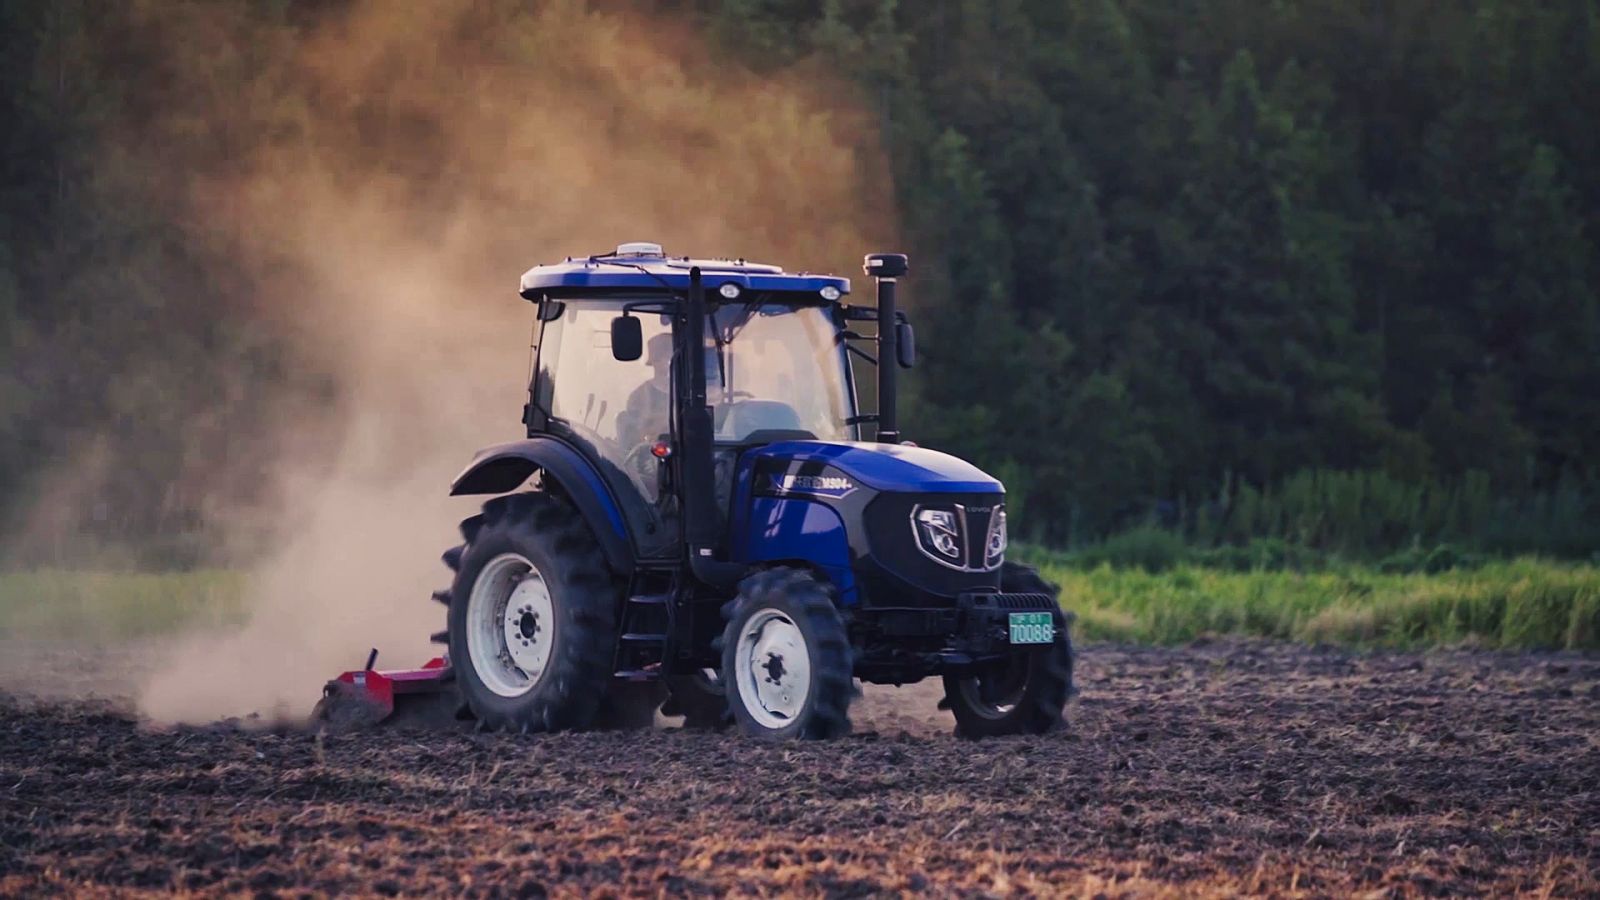 NX510 Pro máy nông nghiệp chính xác cao